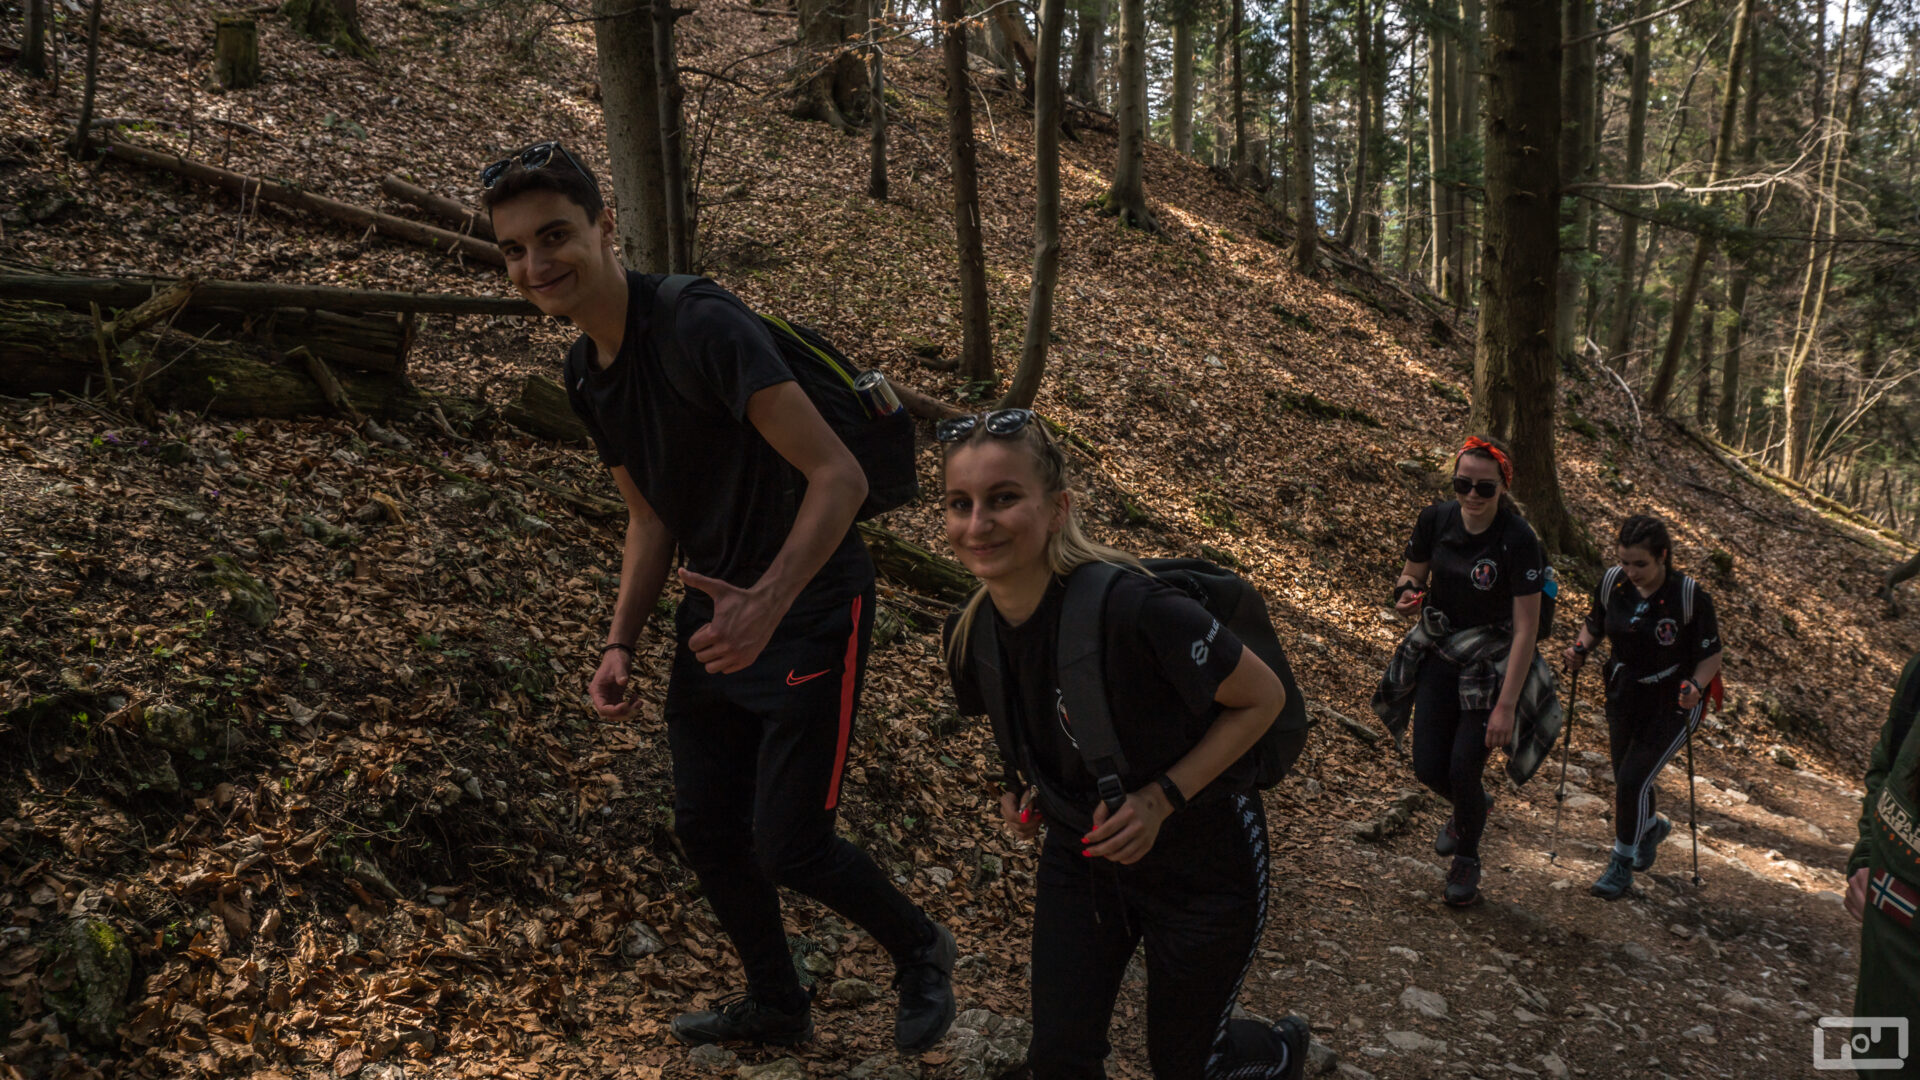 Studenci i studentki ubrani w stroje górskie z założonymi plecakami idą szlakiem przez las.